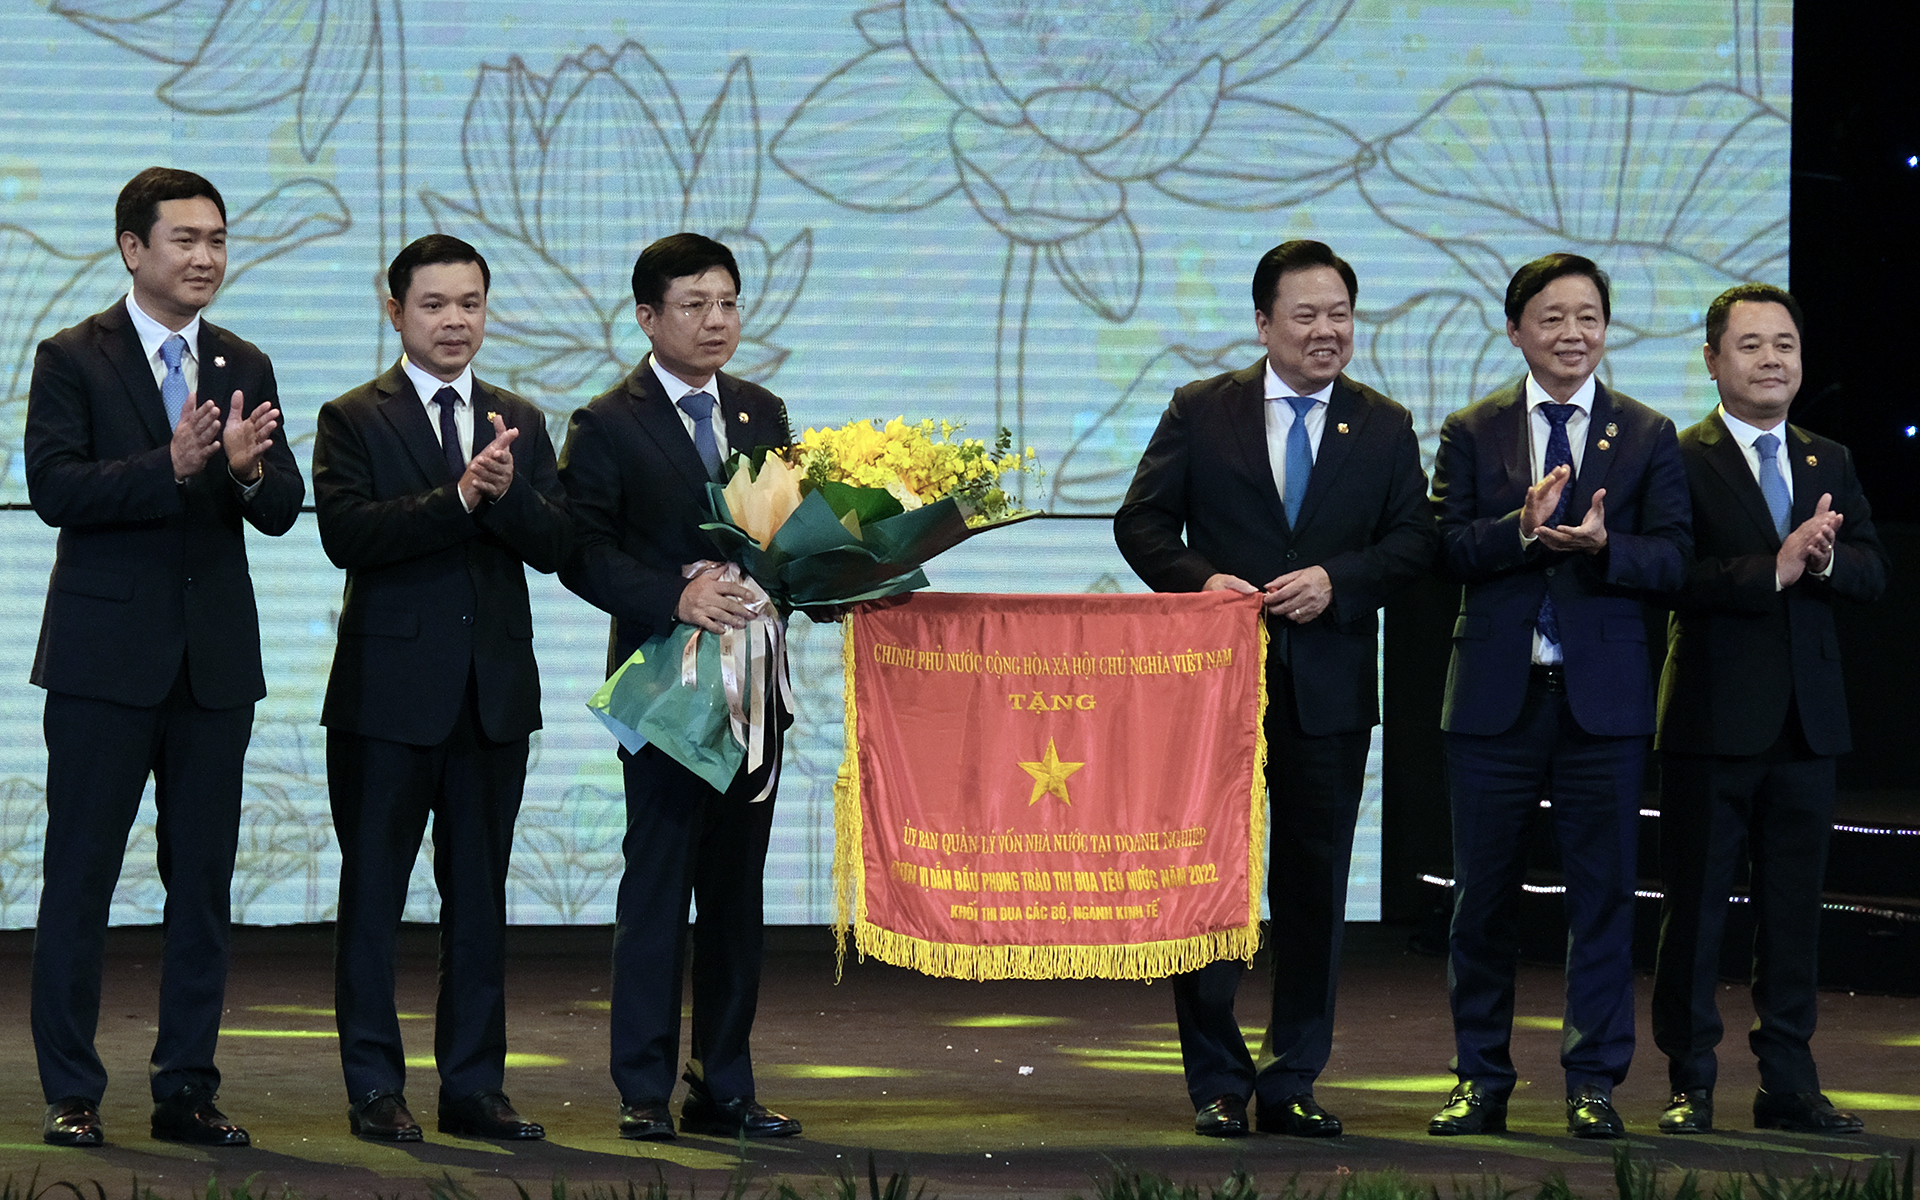 Phó Thủ tướng Trần Hồng Hà trao Cờ thi đua của Chính phủ cho Ủy ban Quản lý vốn Nhà nước tại doanh nghiệp. Ảnh: Bảo Thắng.